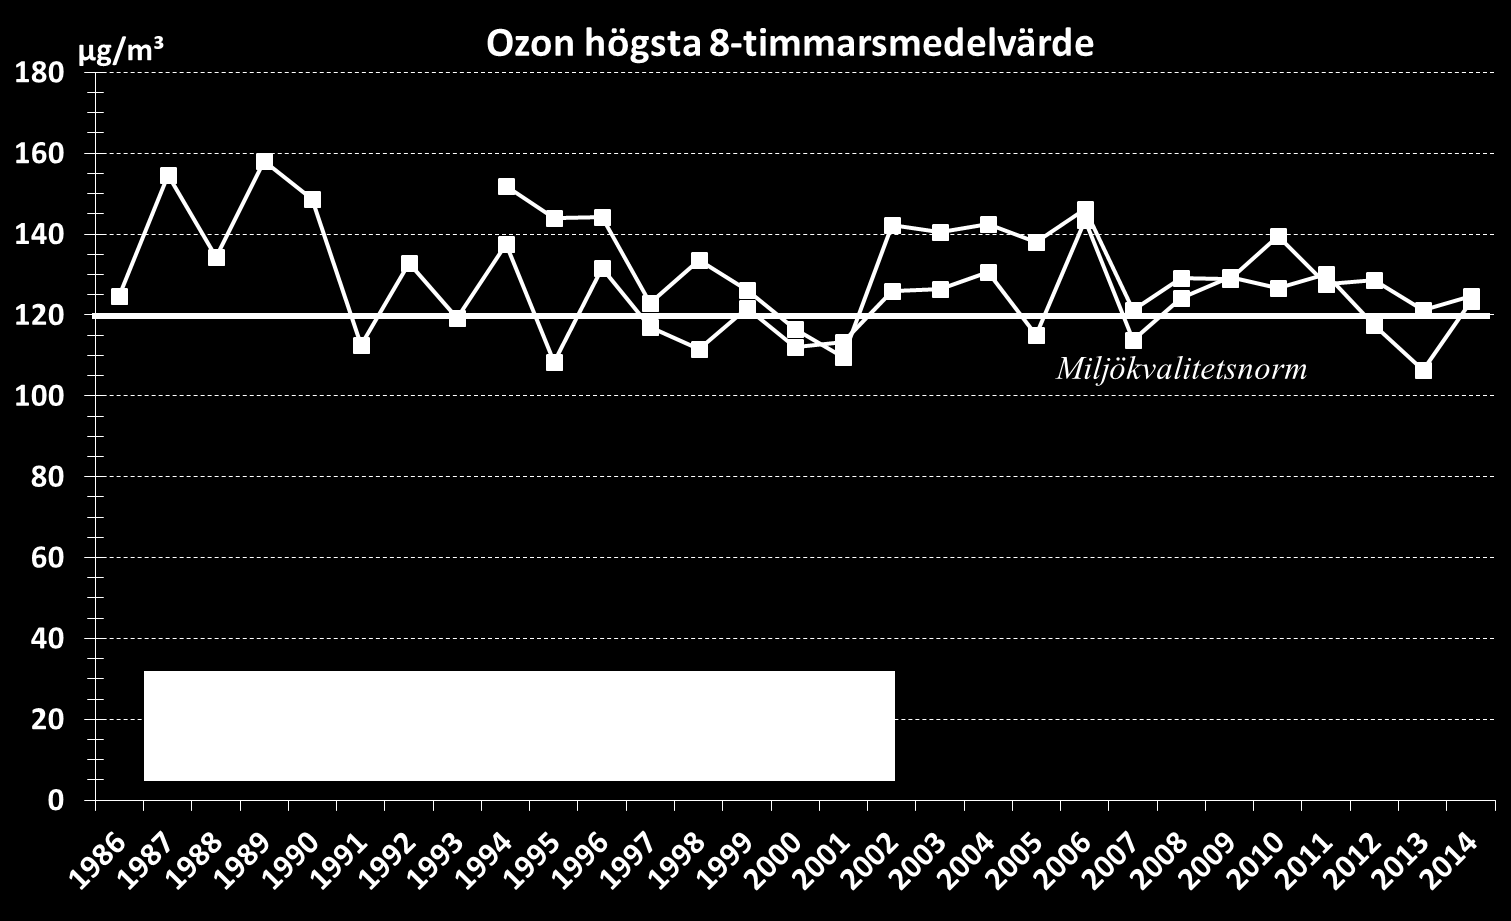 Figur 18. Trend för ozon, årsmedelvärden 1986-2014. Figur 19 visar högsta uppmätta åttatimmarsmedelvärden för åren 1986-2014.